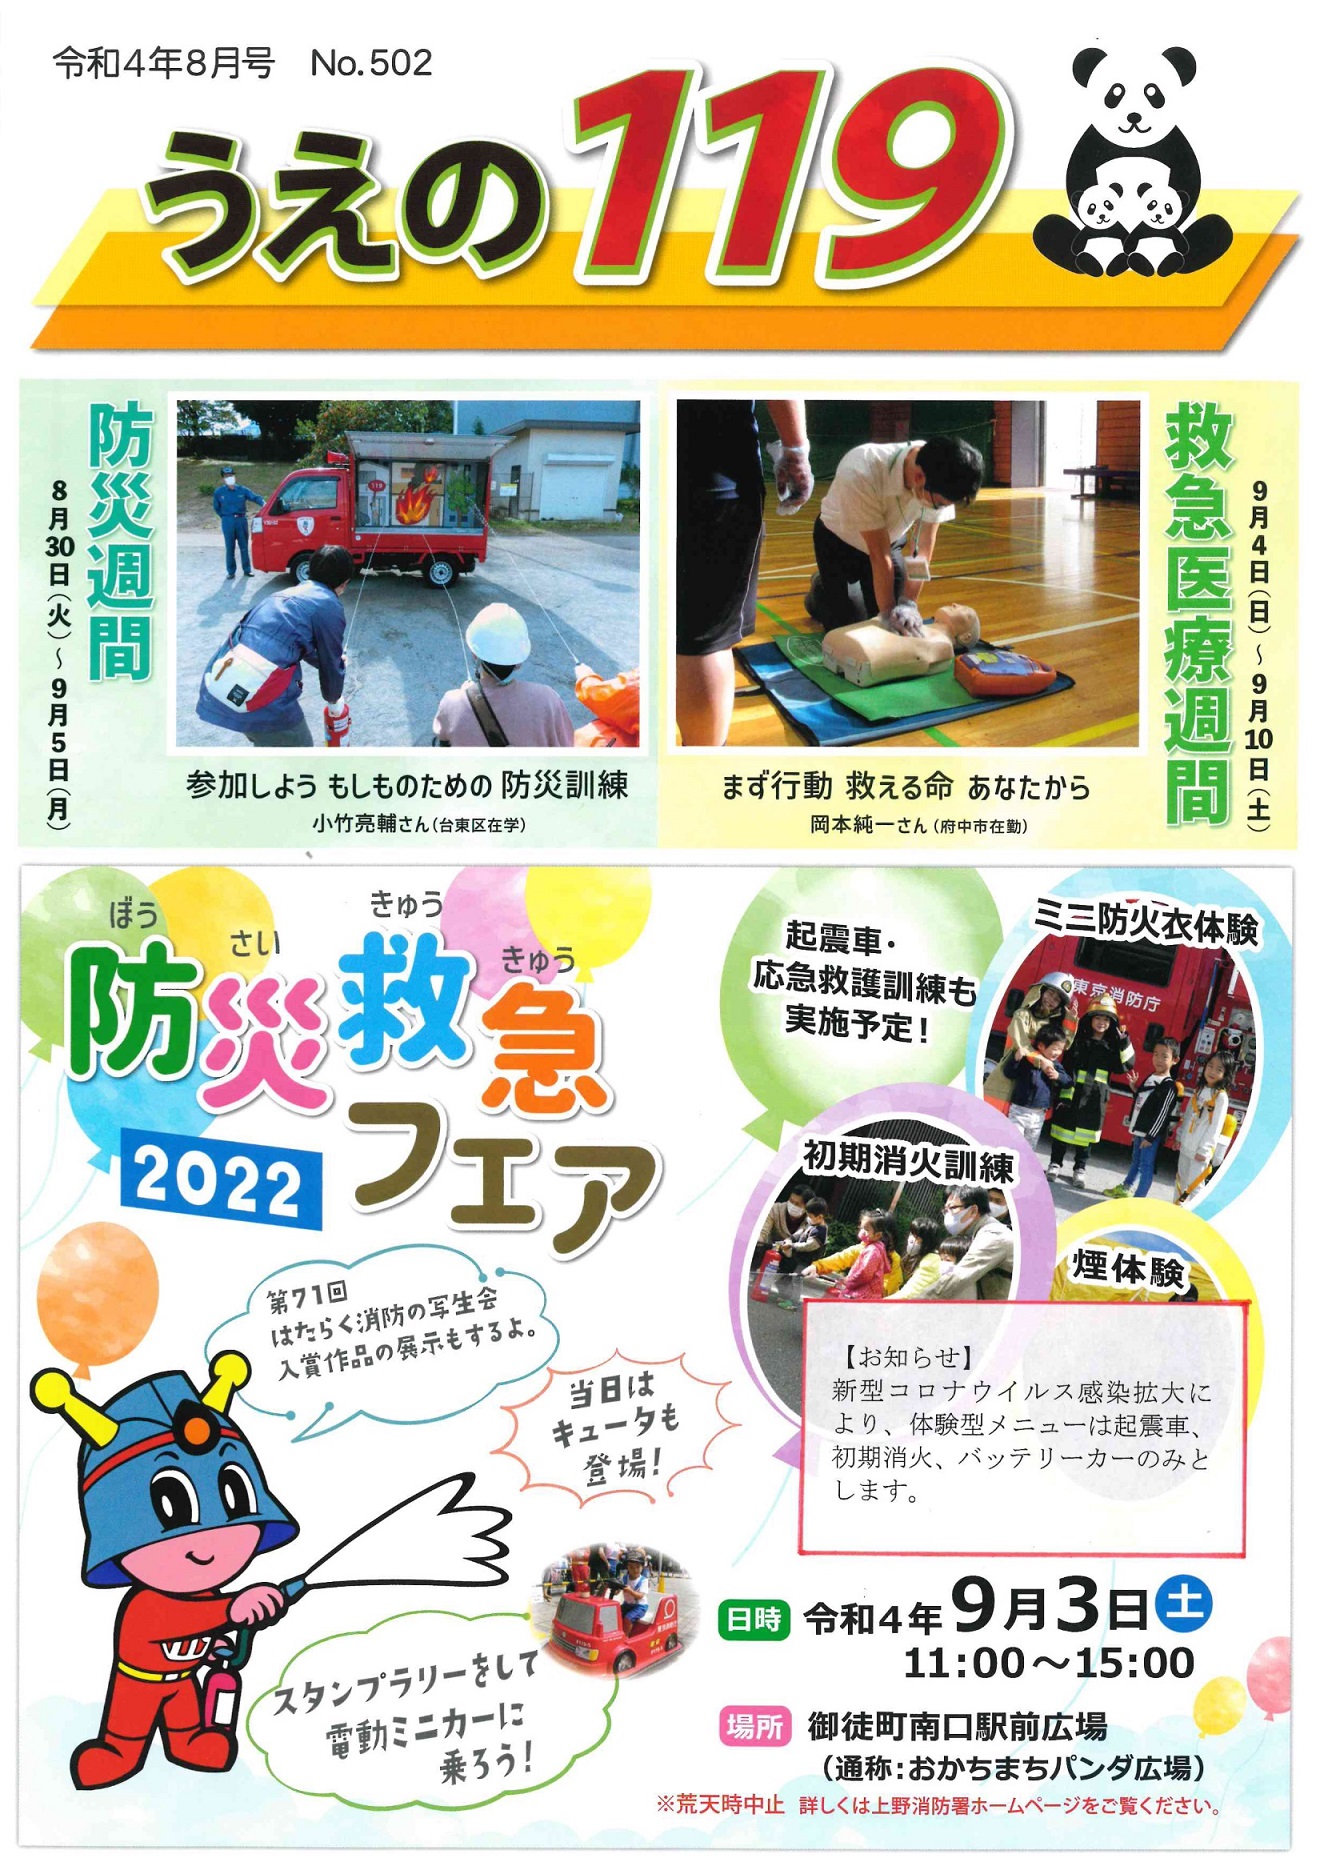 防災救急フェア2022 in おかちまちパンダ広場ポスター